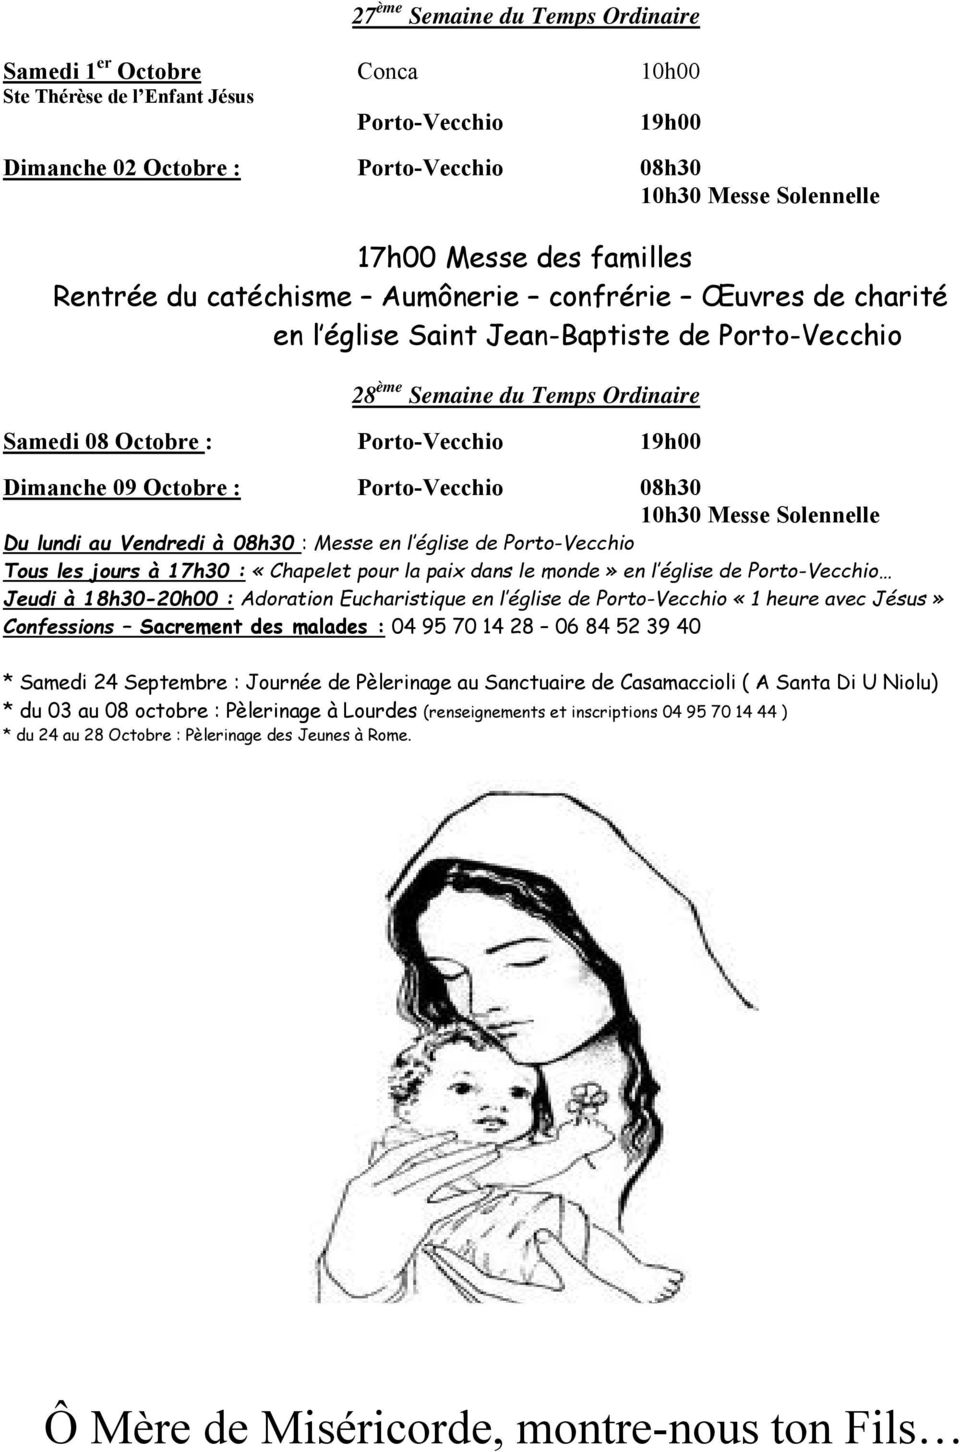 lundi au Vendredi à 08h30 : Messe en l église de Porto-Vecchio Tous les jours à 17h30 : «Chapelet pour la paix dans le monde» en l église de Porto-Vecchio Jeudi à 18h30-20h00 : Adoration